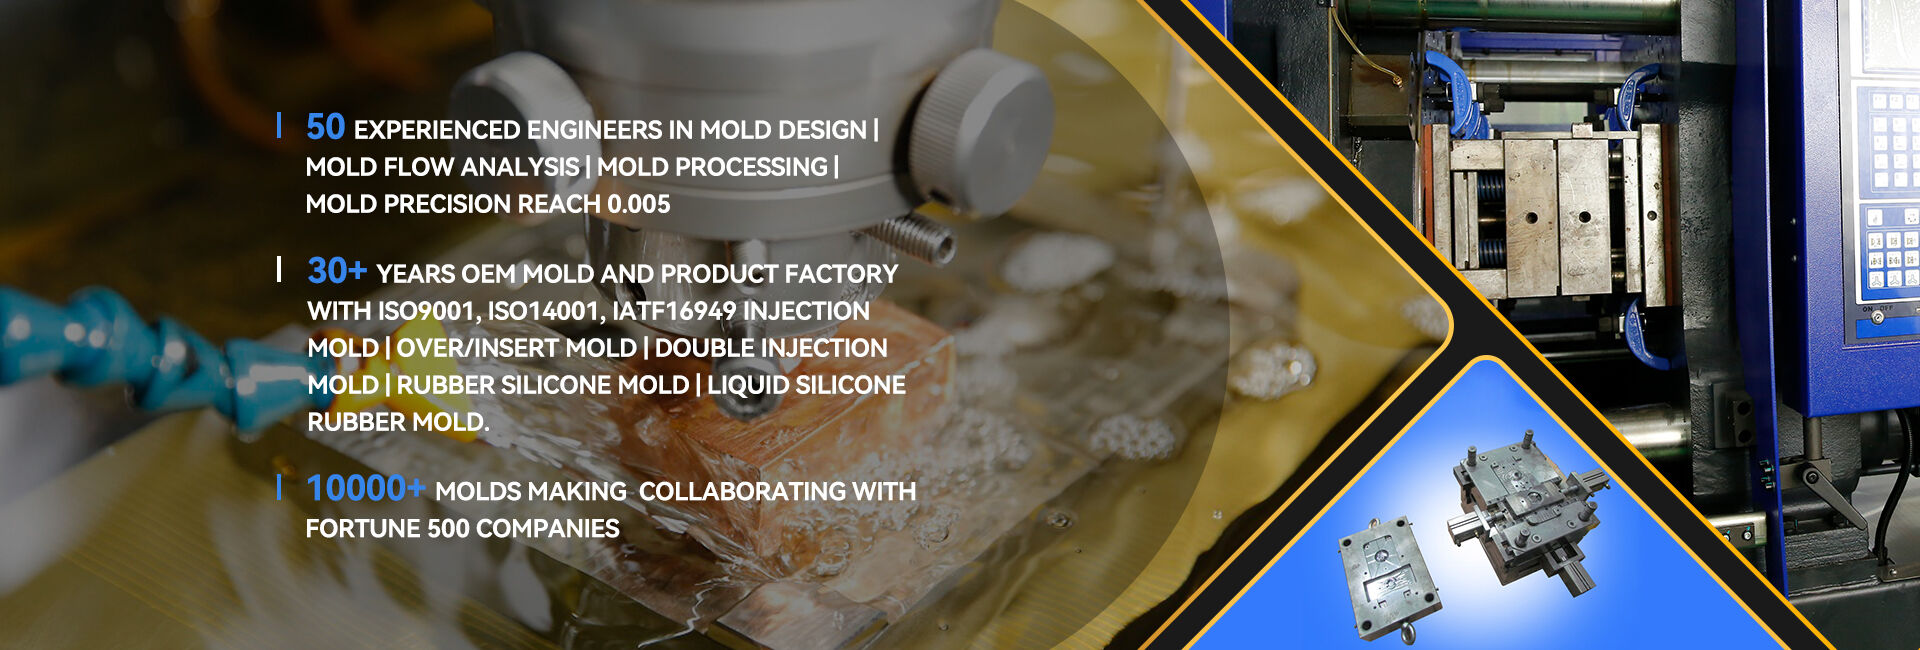 Designing for Liquid Silicone Rubber